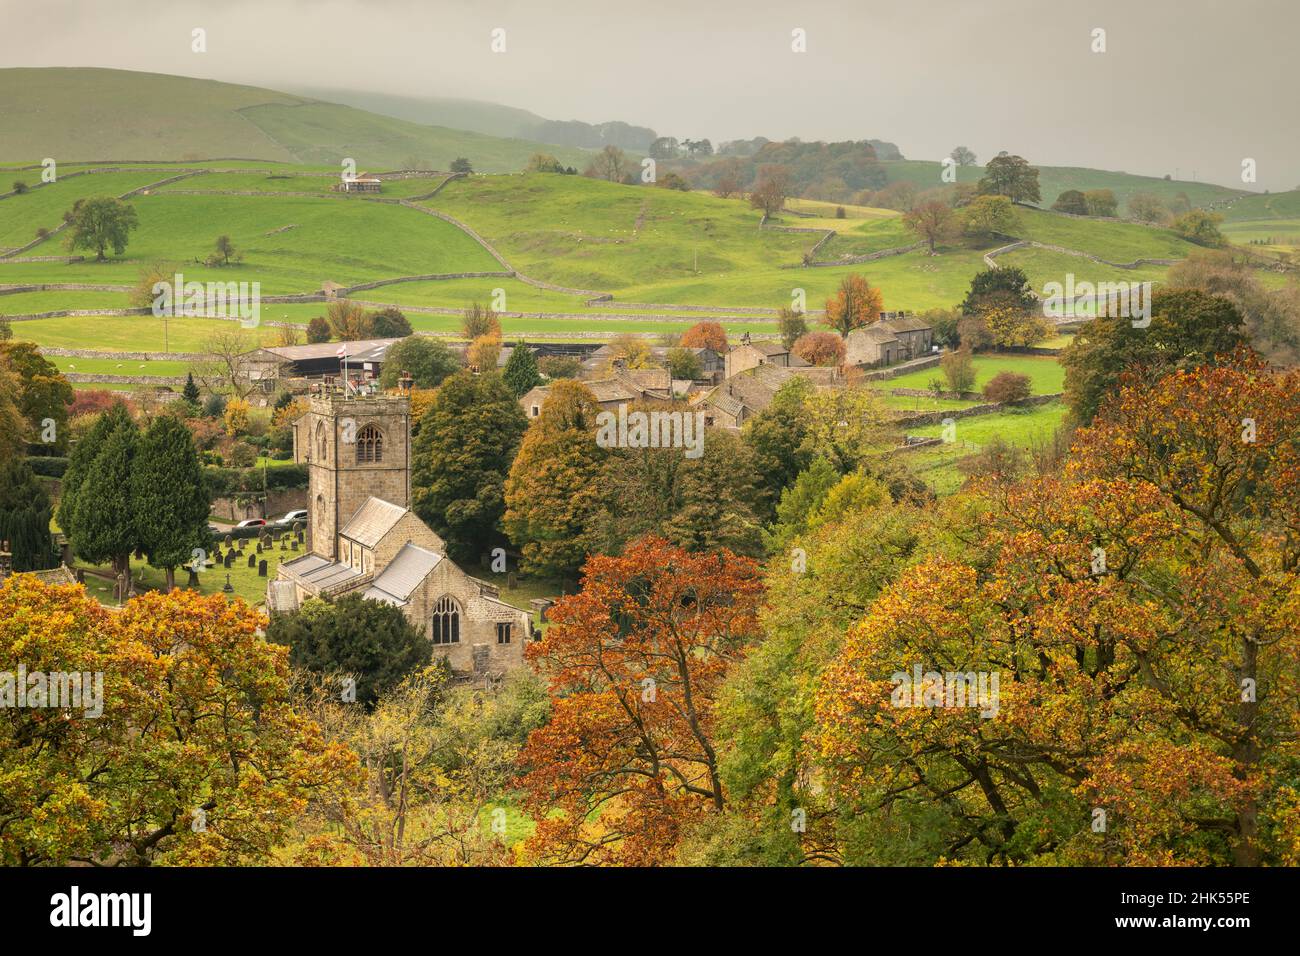 Herbstfarben umgeben die St. Wilfrid's Church im Yorkshire Dales Dorf Burnsall, Wharfedale, North Yorkshire, England, Vereinigtes Königreich, Europa Stockfoto